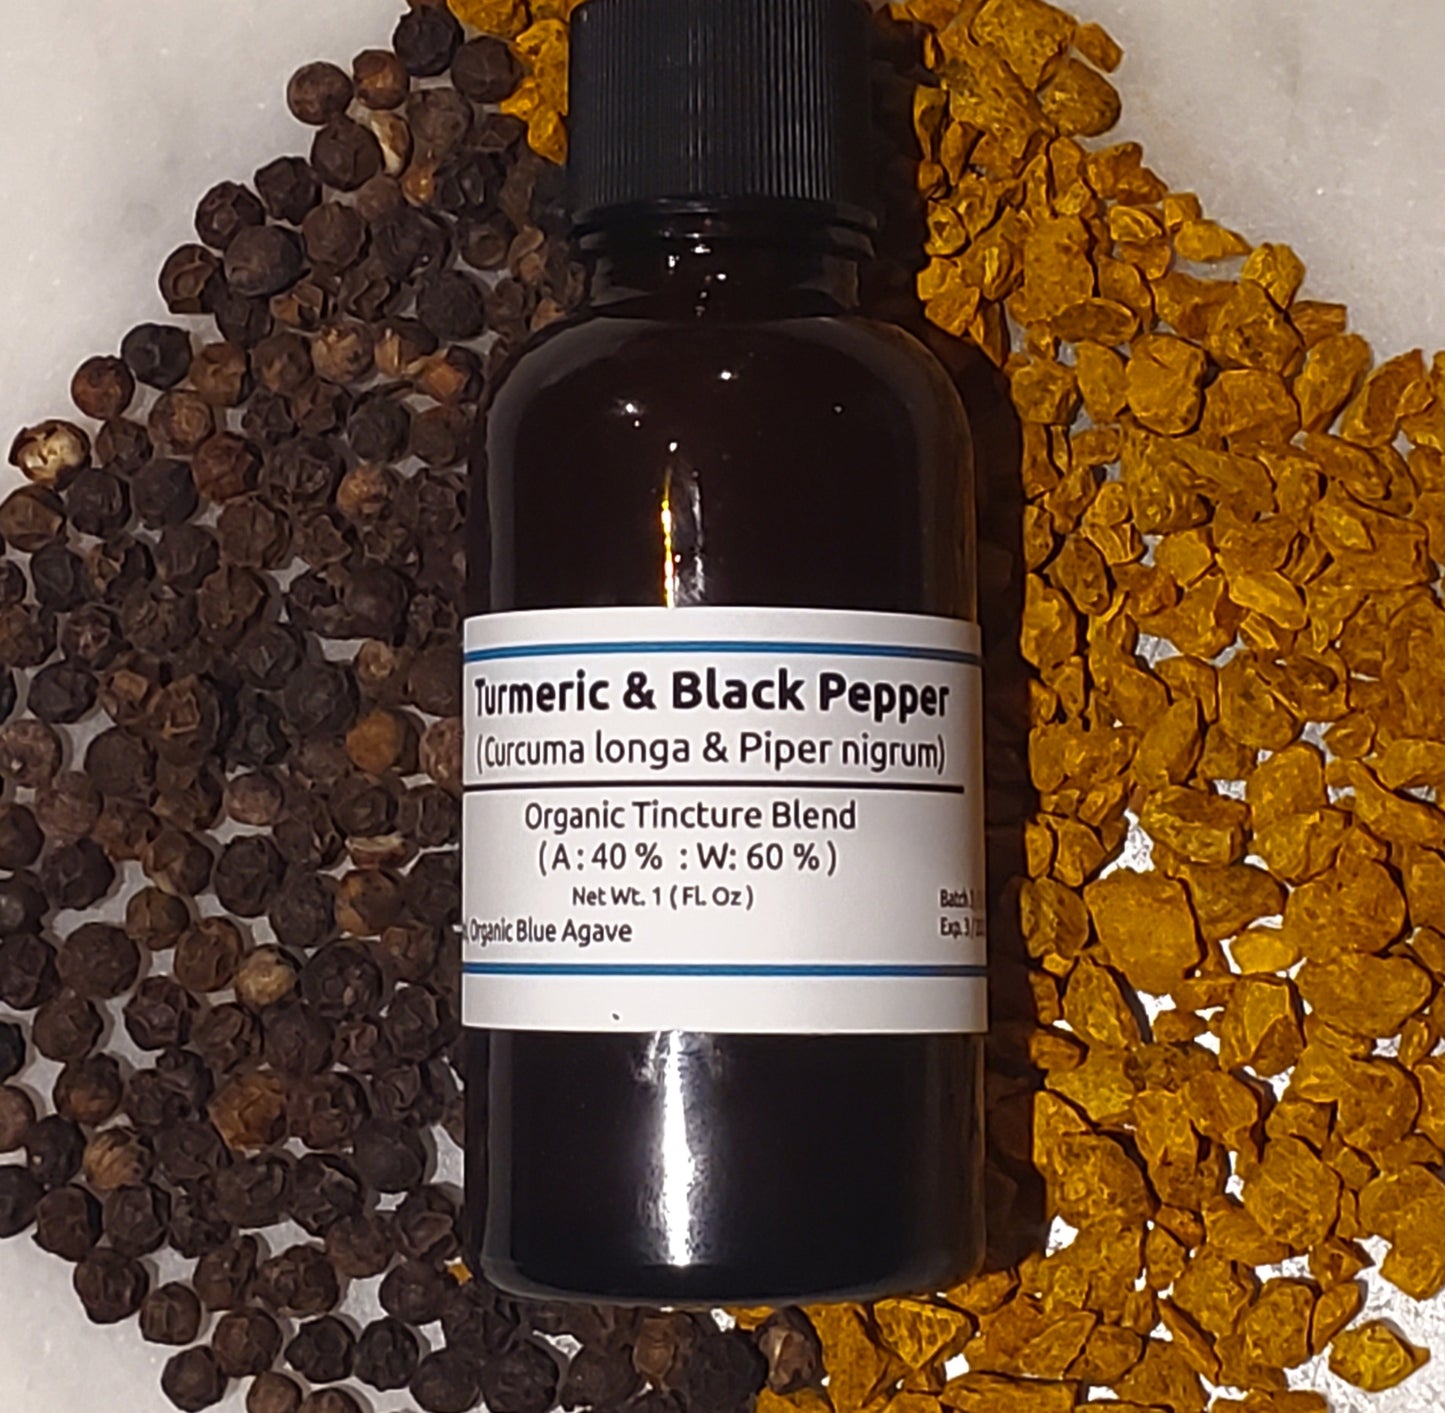 Turmeric Root & Peppercorn Extract Blend (Curcuma longa & Piper nigrum)